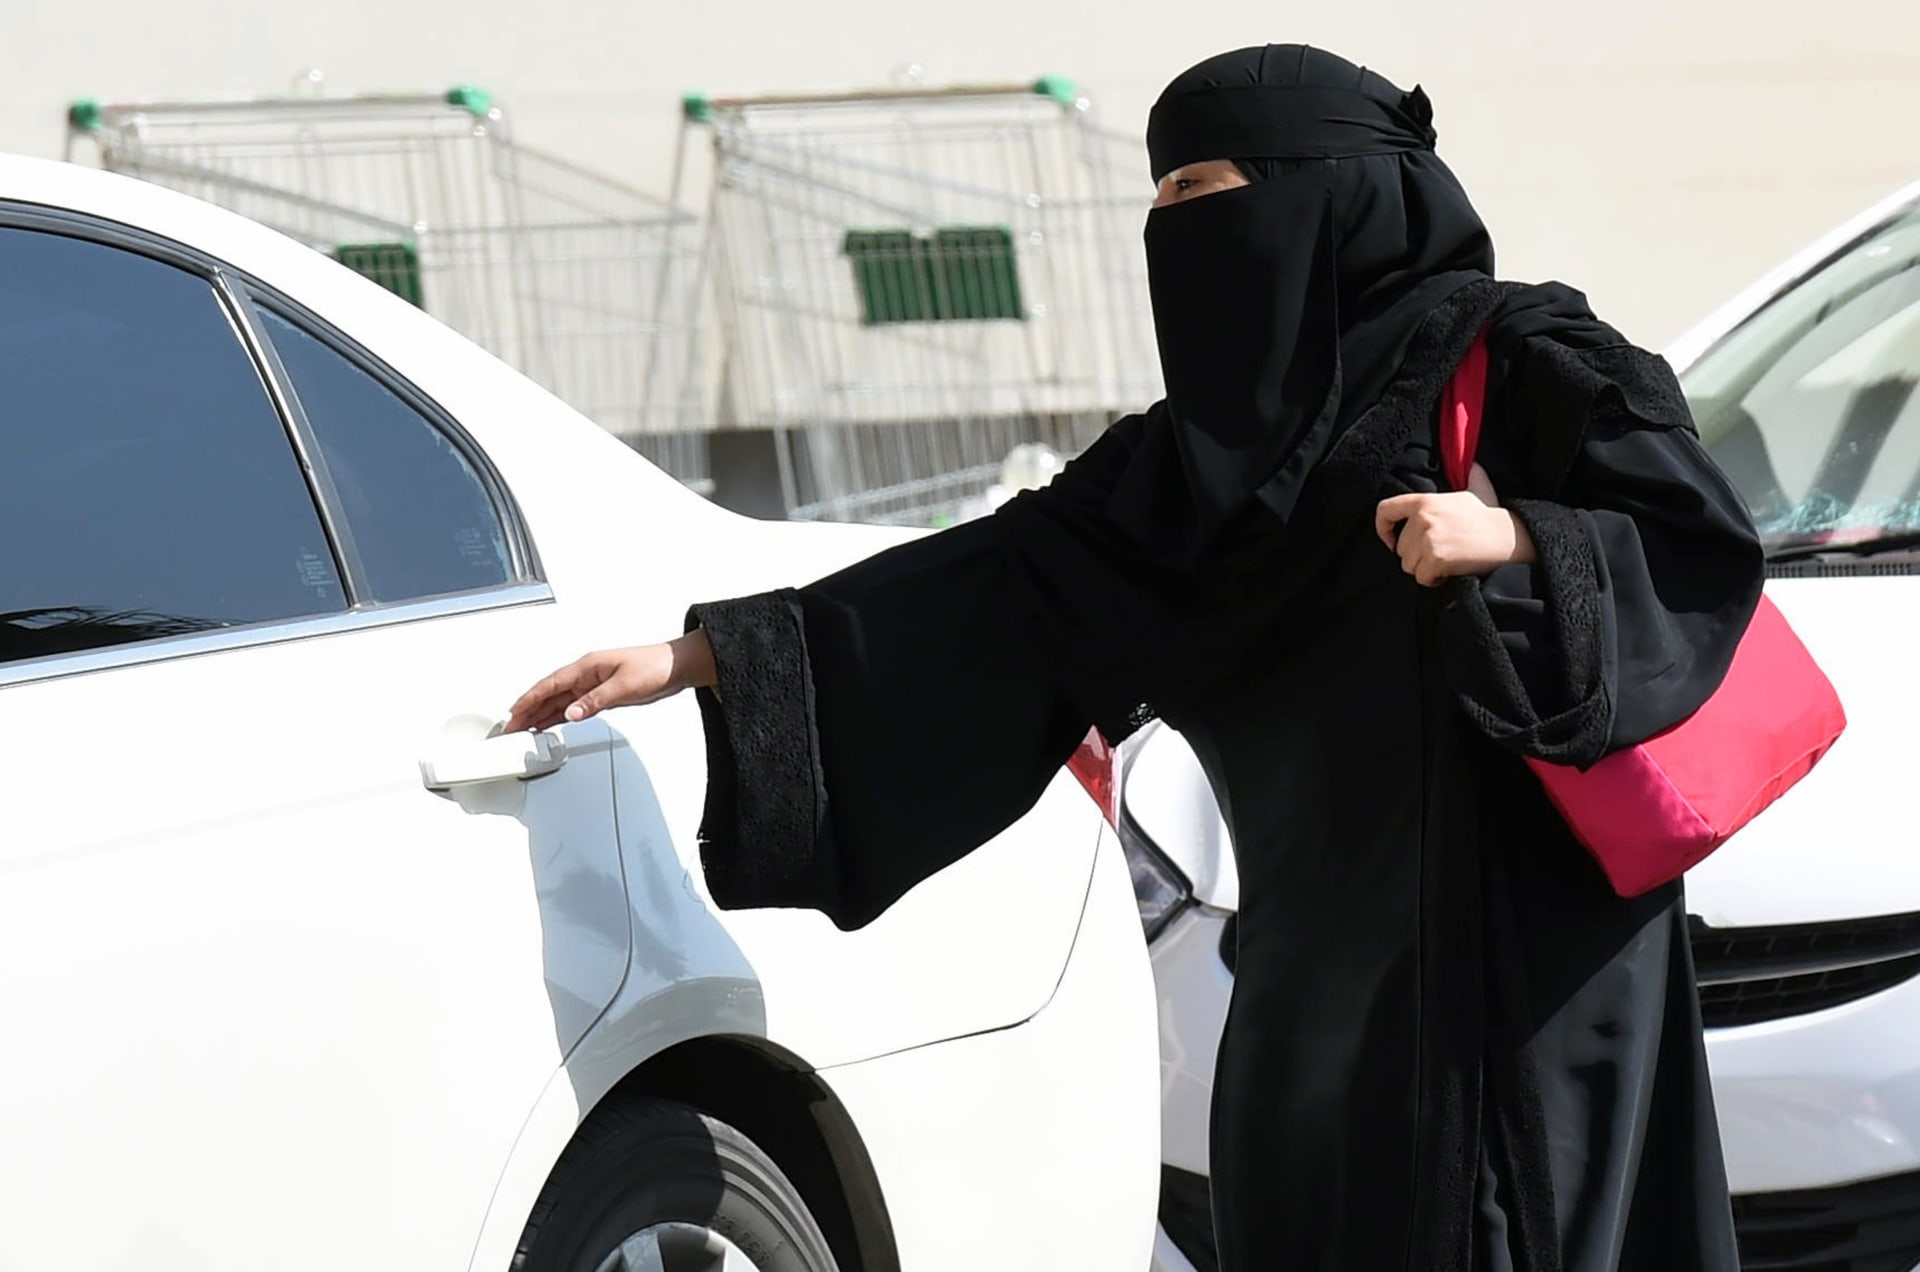 السعودية.. تفاعل على تصرف فتاة رفضت قبول القهوة من سائق أجرة خوفا من "ألمخدرات"